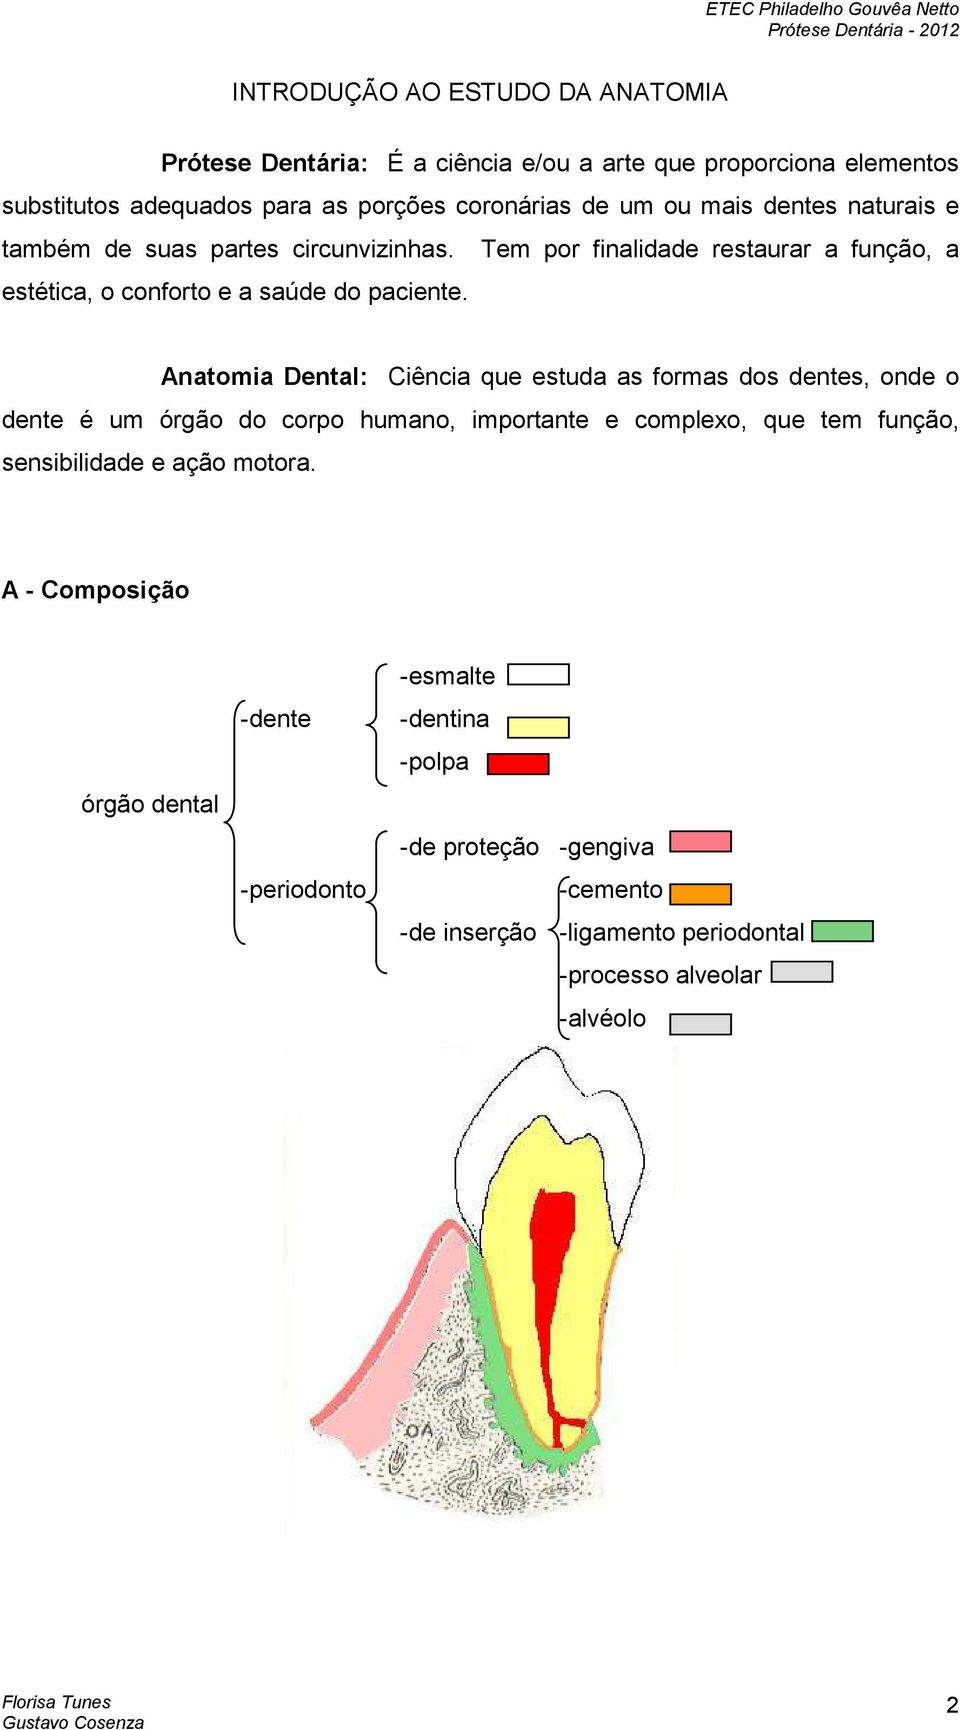 Anatomia Dental: Ciência que estuda as formas dos dentes, onde o dente é um órgão do corpo humano, importante e complexo, que tem função, sensibilidade e ação